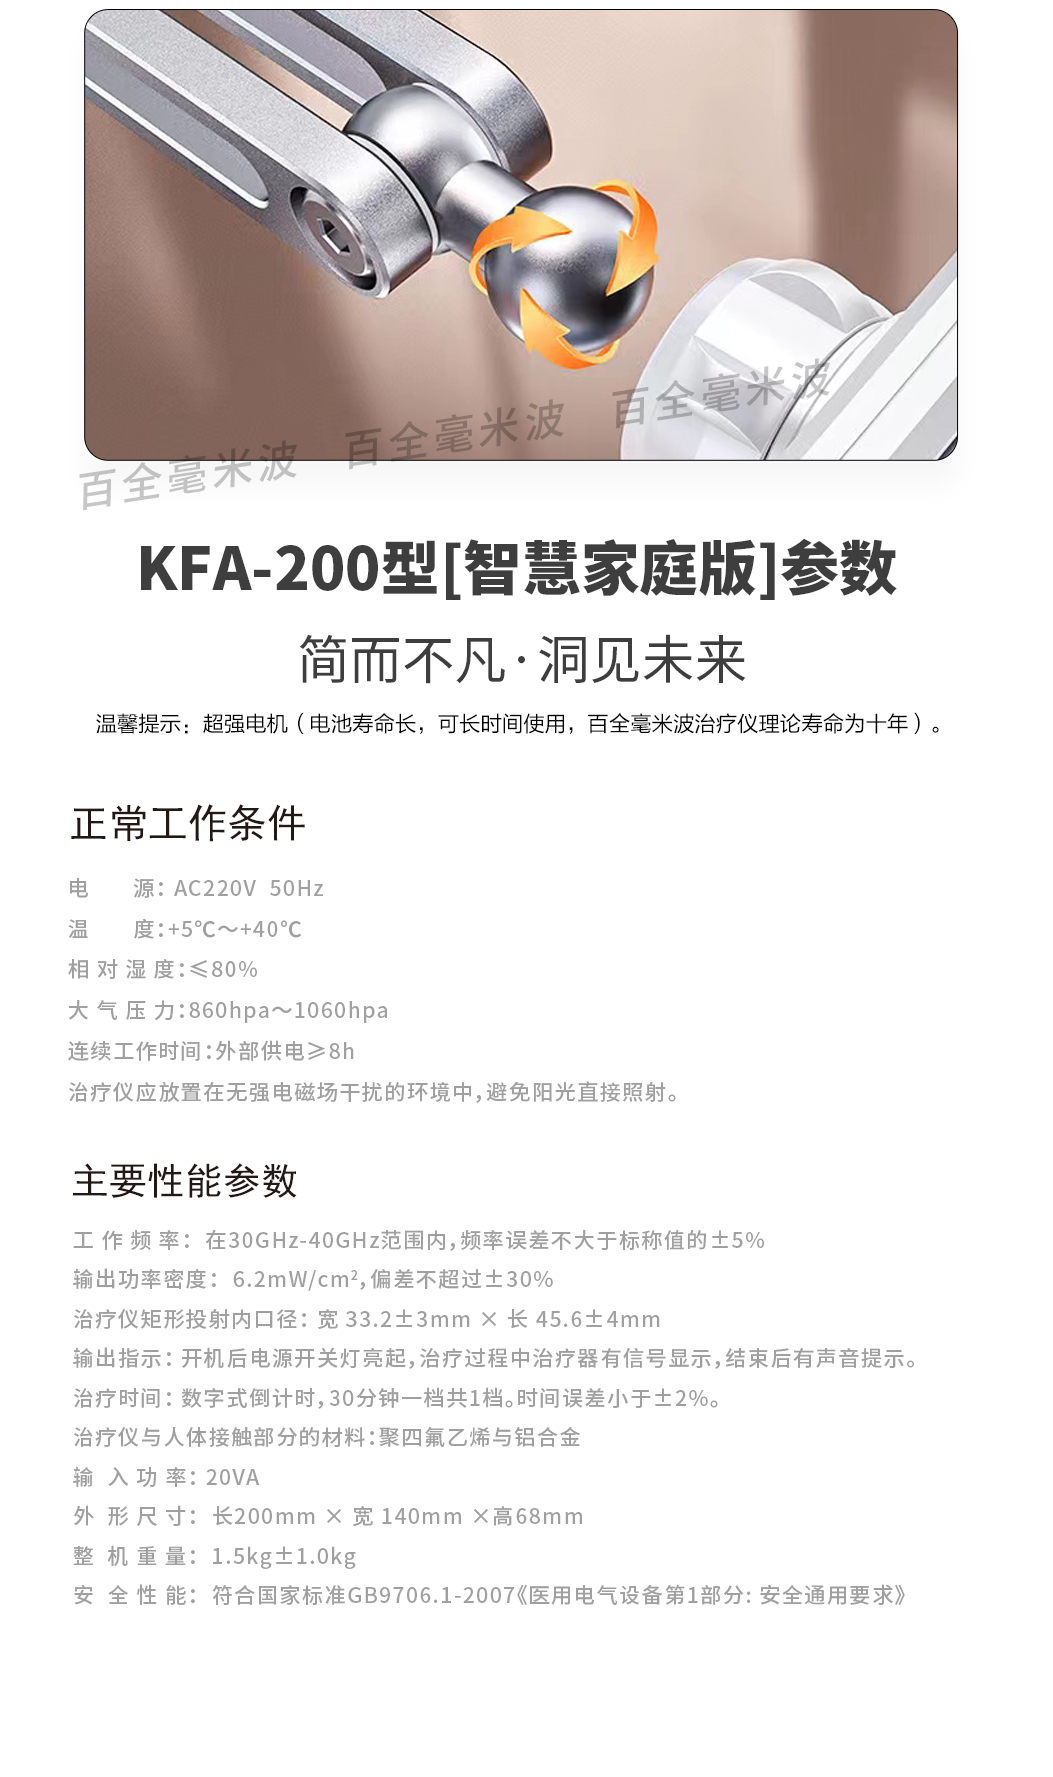 KFA-200型智慧家庭版